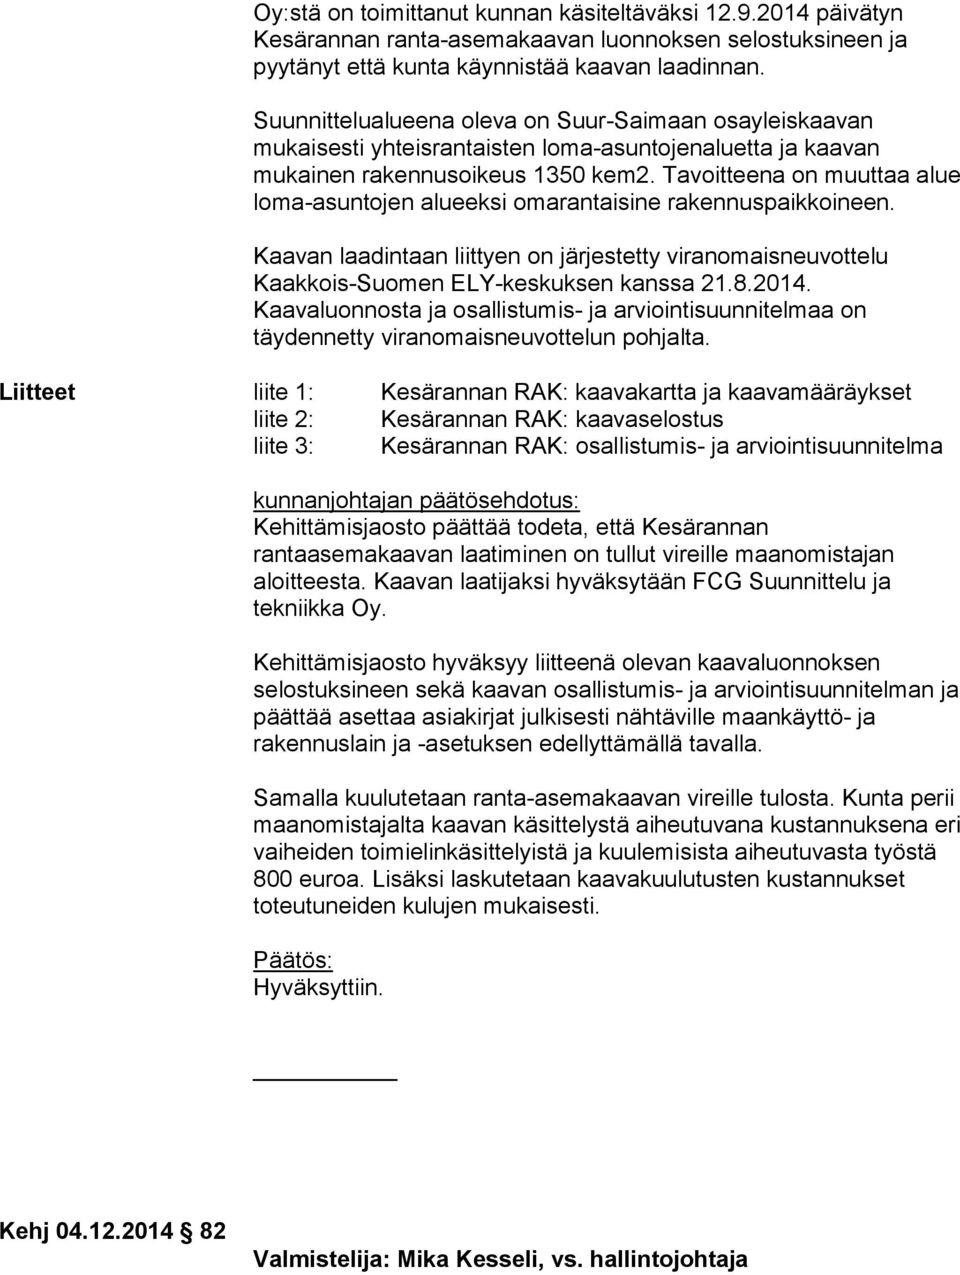 Tavoitteena on muuttaa alue loma-asuntojen alueeksi omarantaisine rakennuspaikkoineen. Kaavan laadintaan liittyen on järjestetty viranomaisneuvottelu Kaakkois-Suomen ELY-keskuksen kanssa 21.8.2014.